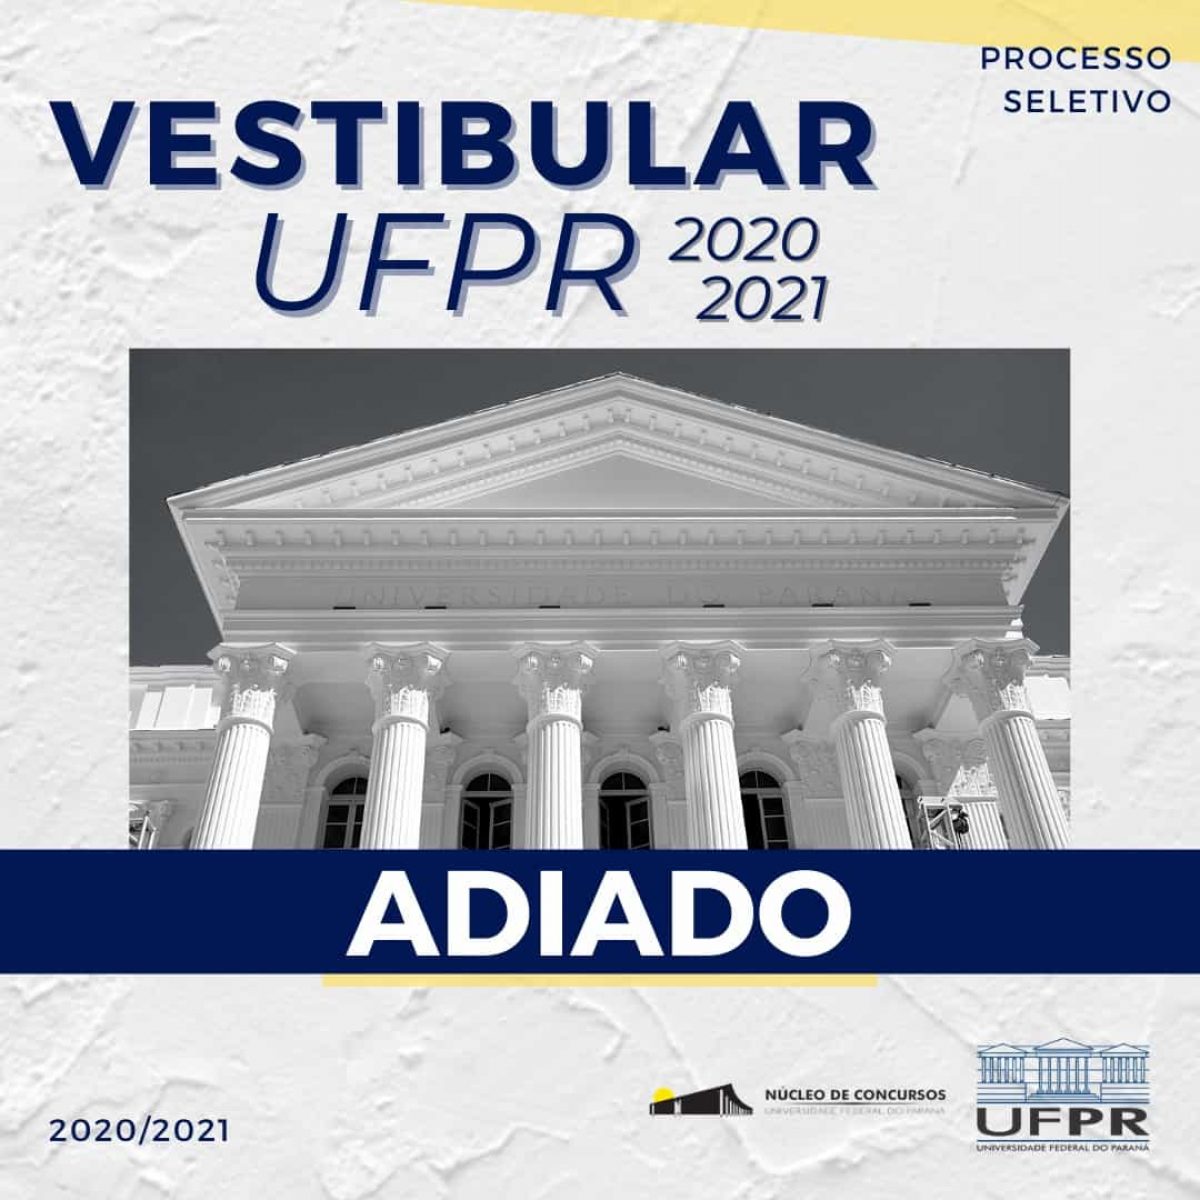 UFPR (Universidade Federal do Paraná) - Chegou o grande dia \o